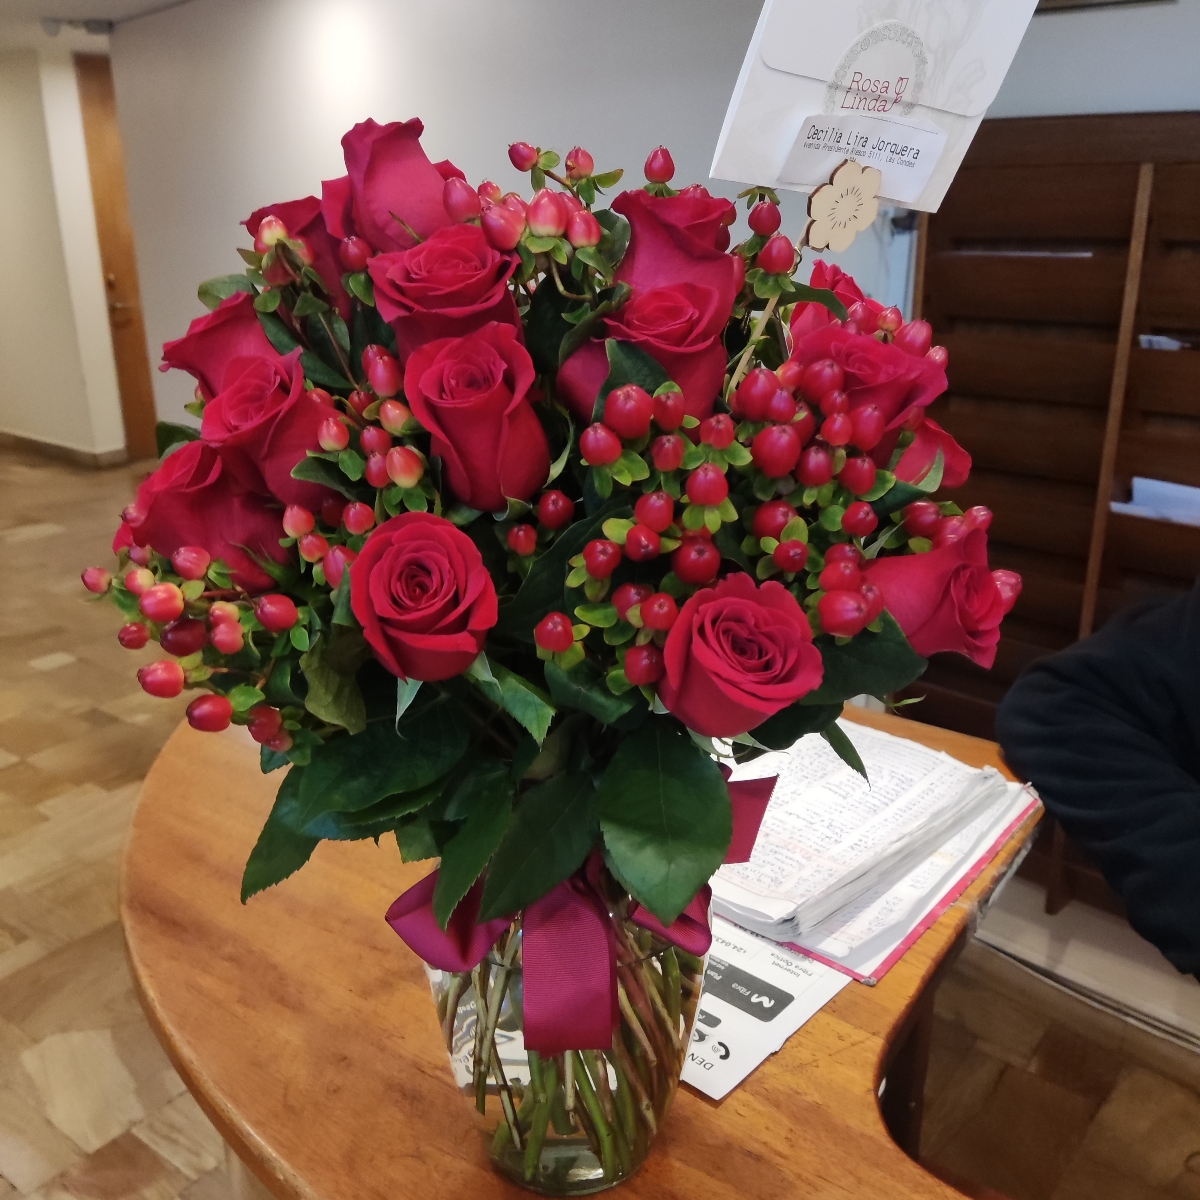 Antonia Rojo - Arreglo floral en florero con 24 rosas rojas e hypericum rojo - Pedido 255885